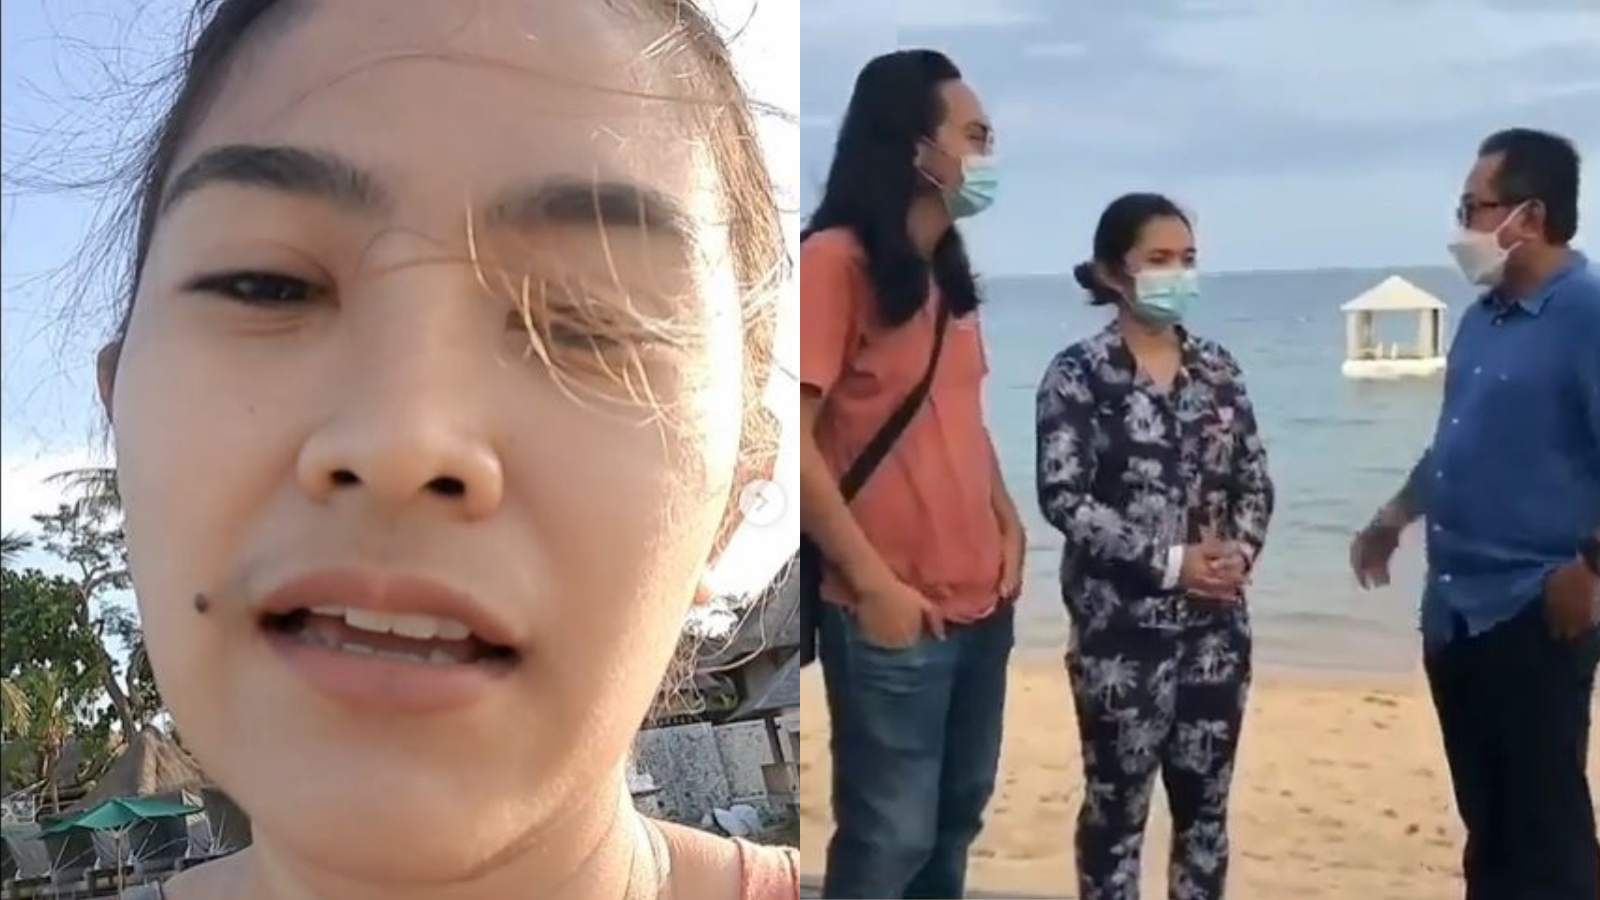 Kronologi Gadis Bali (Mirah Sugandhi) Diusir Satpam dari Pantai karena Ganggu Lahan Pribadi, Lah?